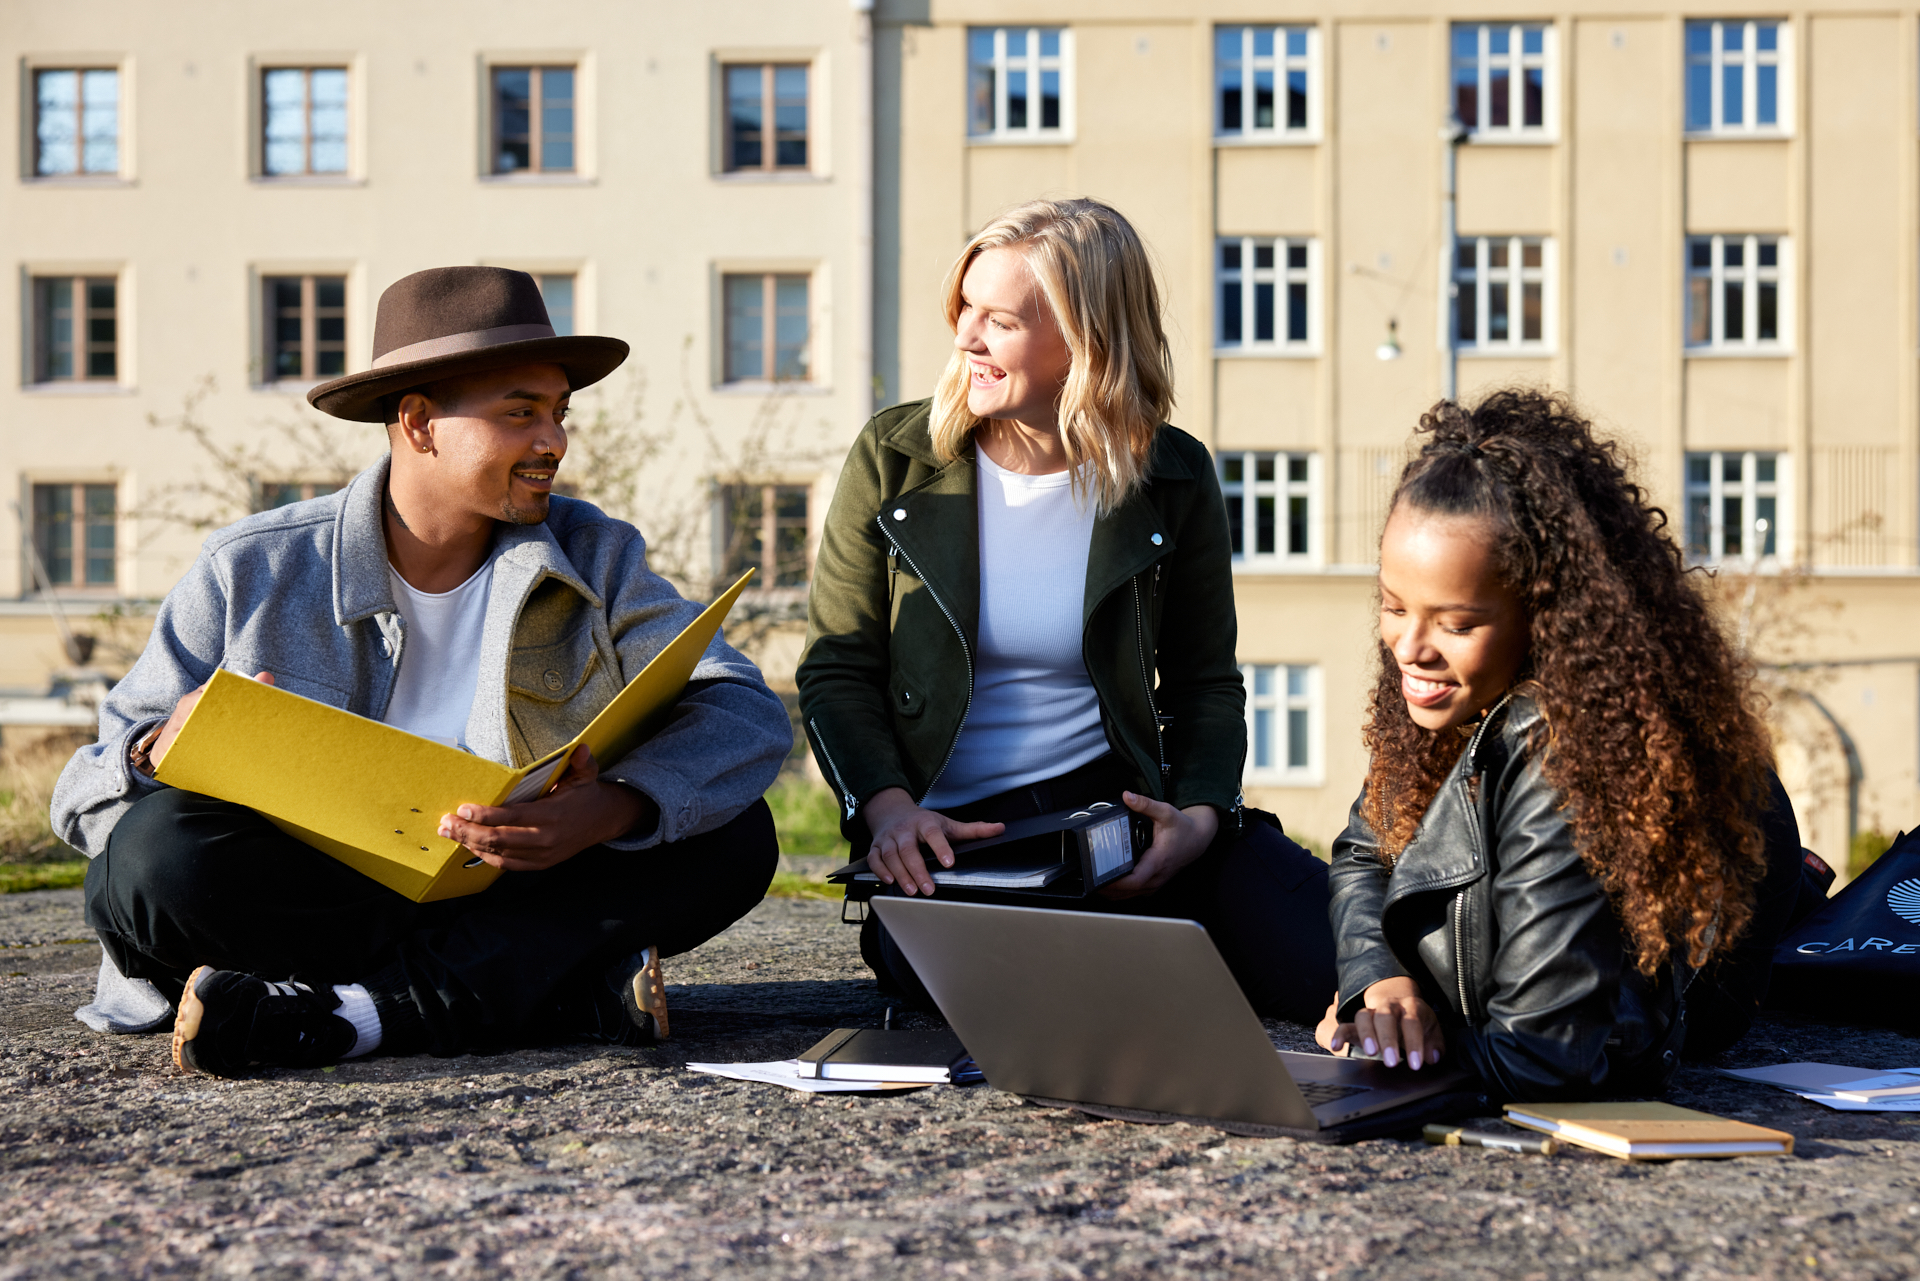 Kolme opiskelijaa istuu kalliolla mukanaan opiskelukansio ja kannettava tietokone.